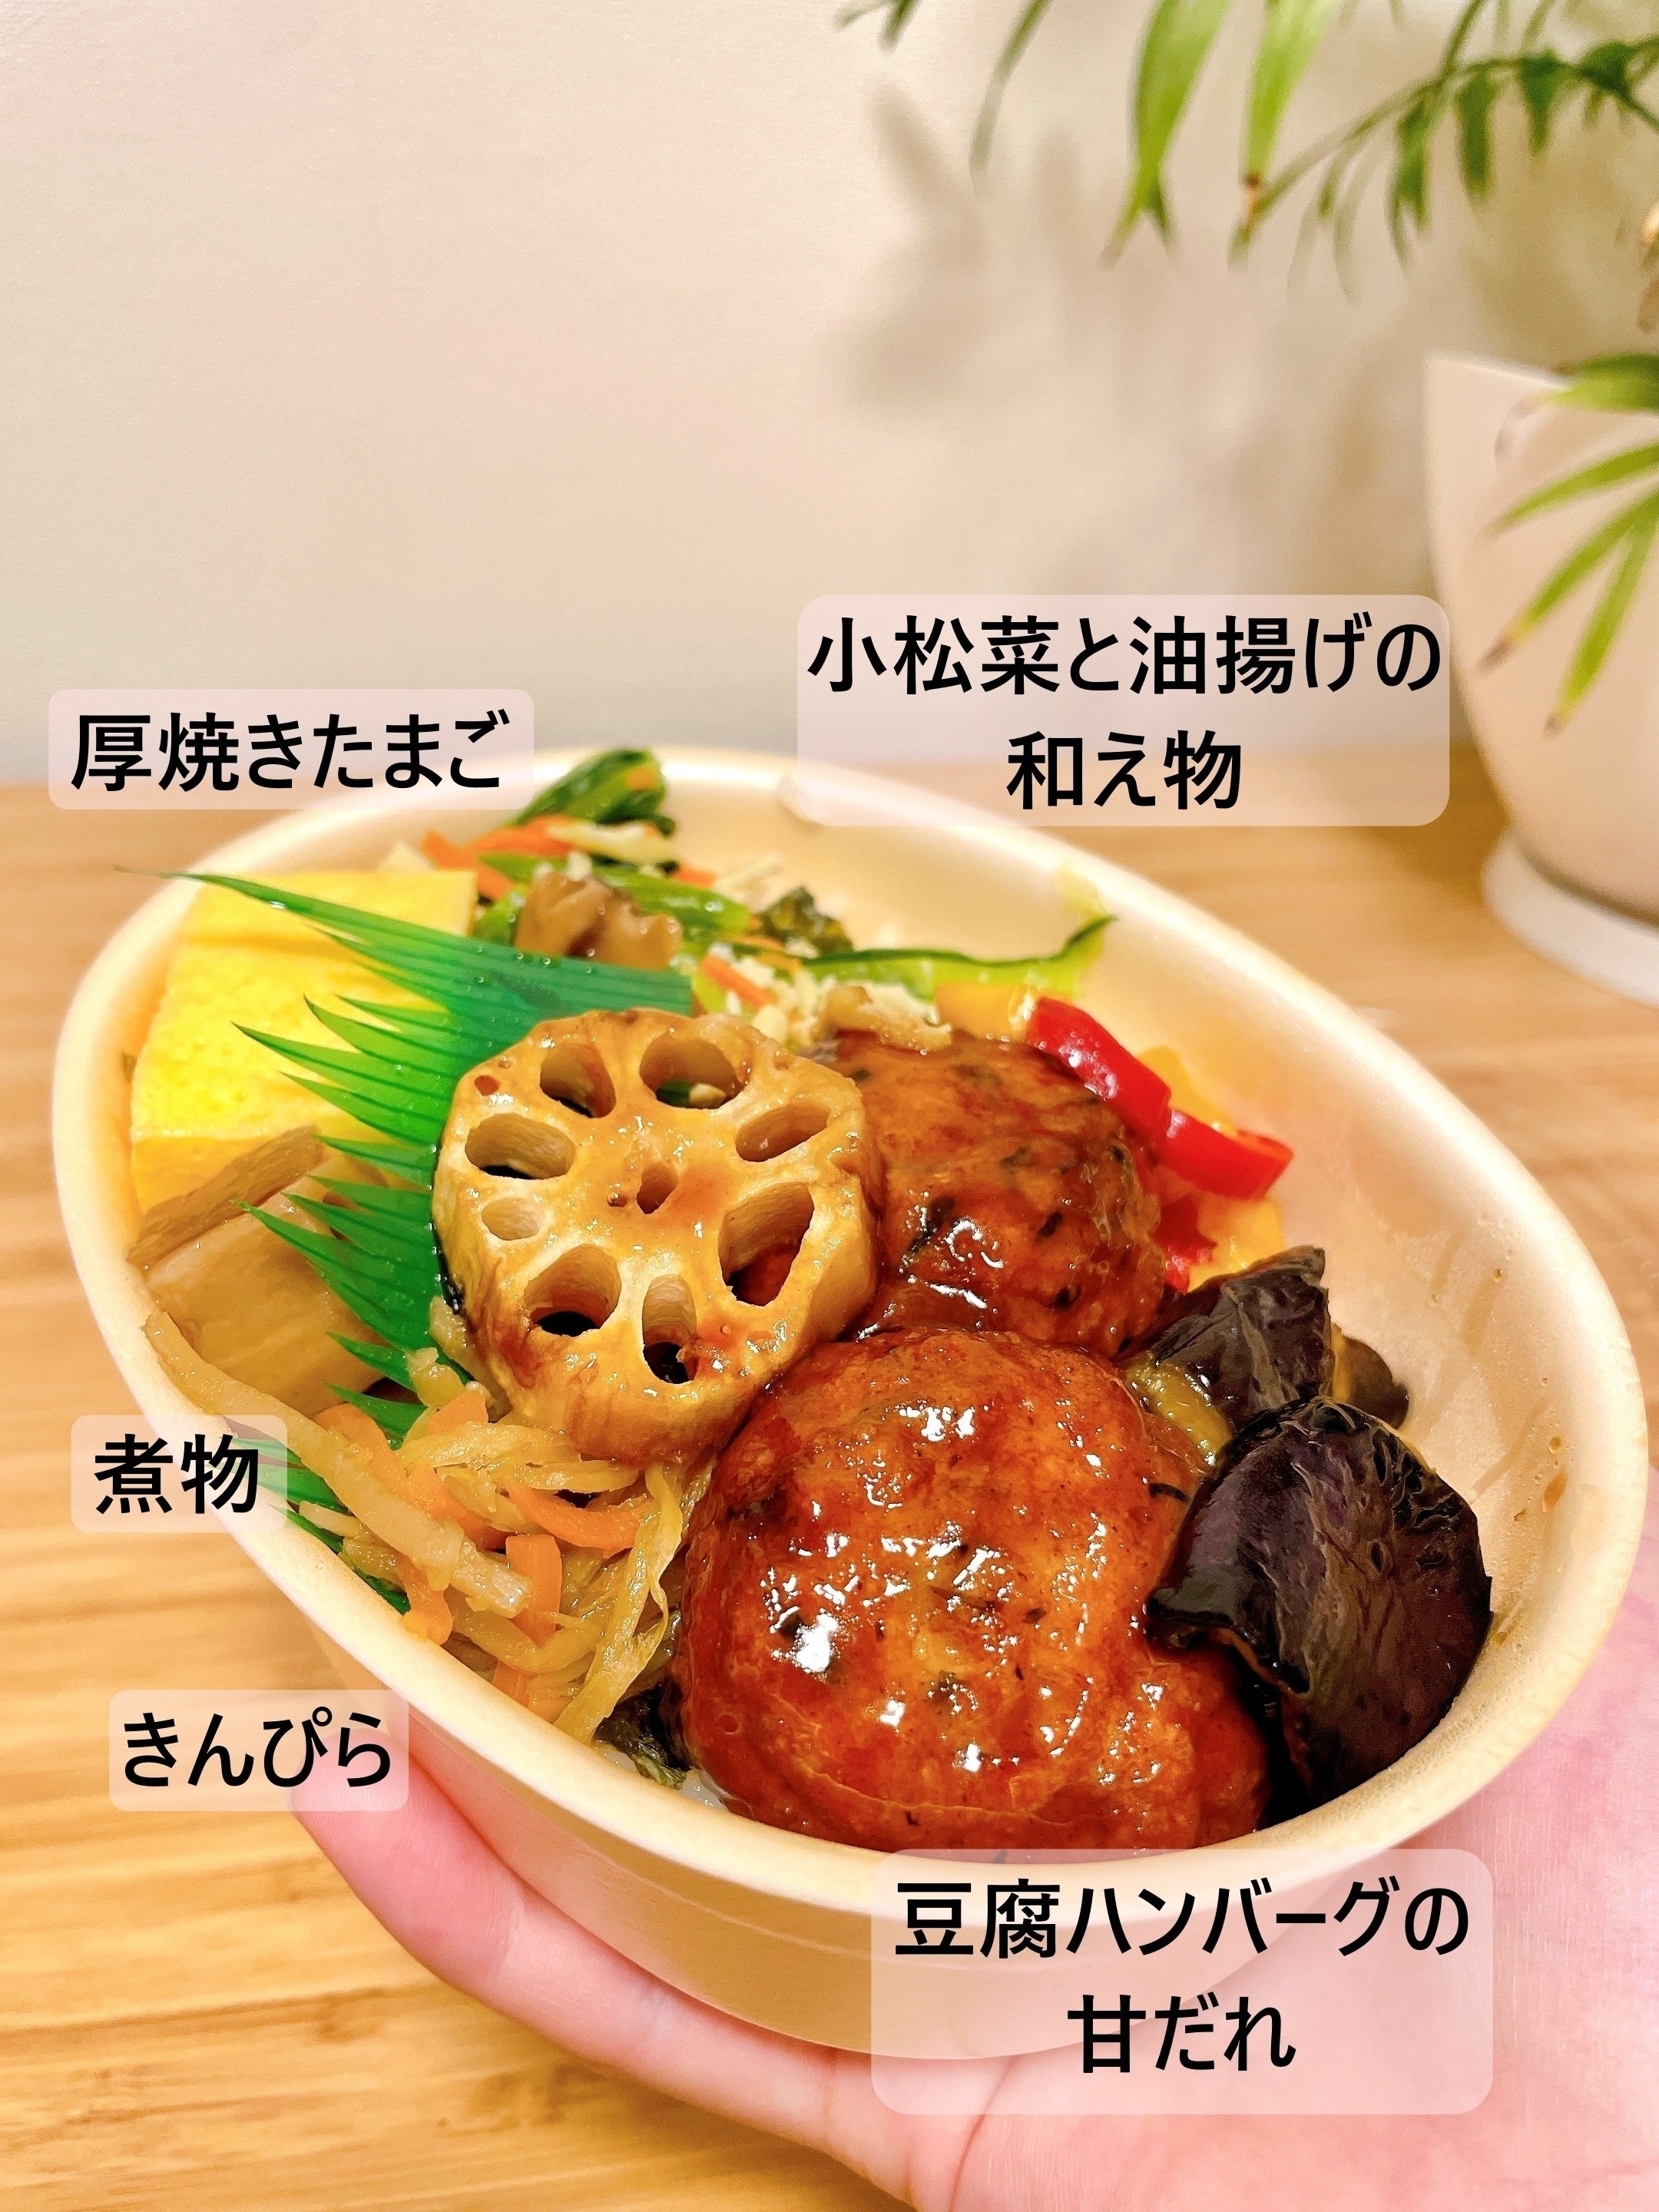 ほっともっとのオススメ弁当「彩・豆腐ハンバーグと野菜の照りだれ弁当」